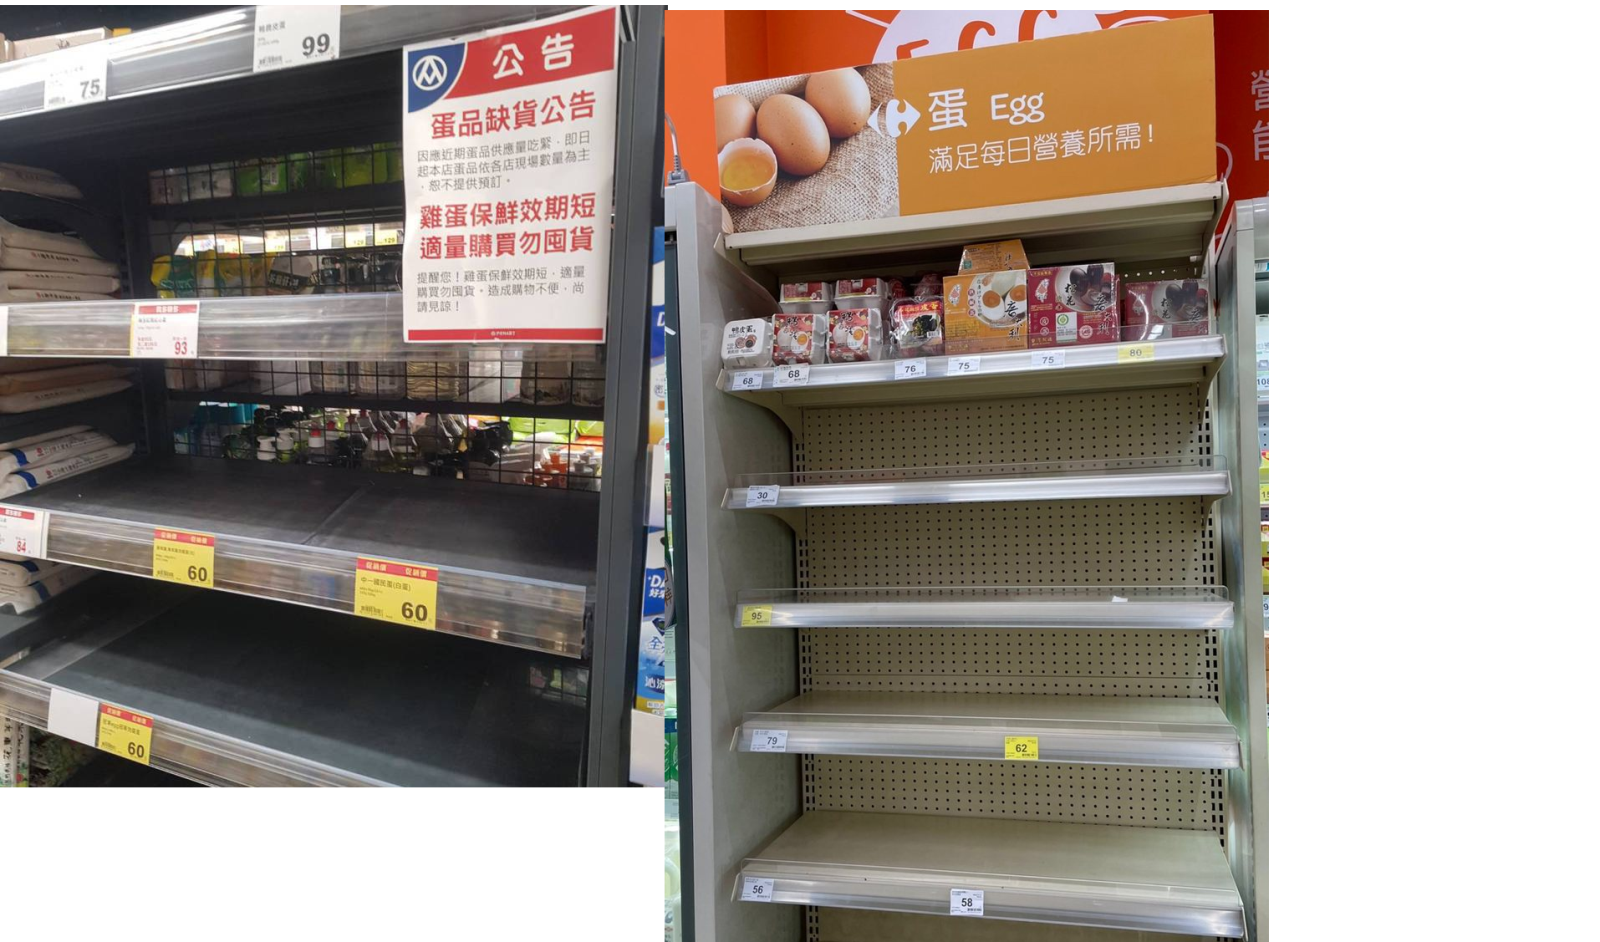 Khan hiếm trứng đẩy giá tăng vọt tại Đài Loan